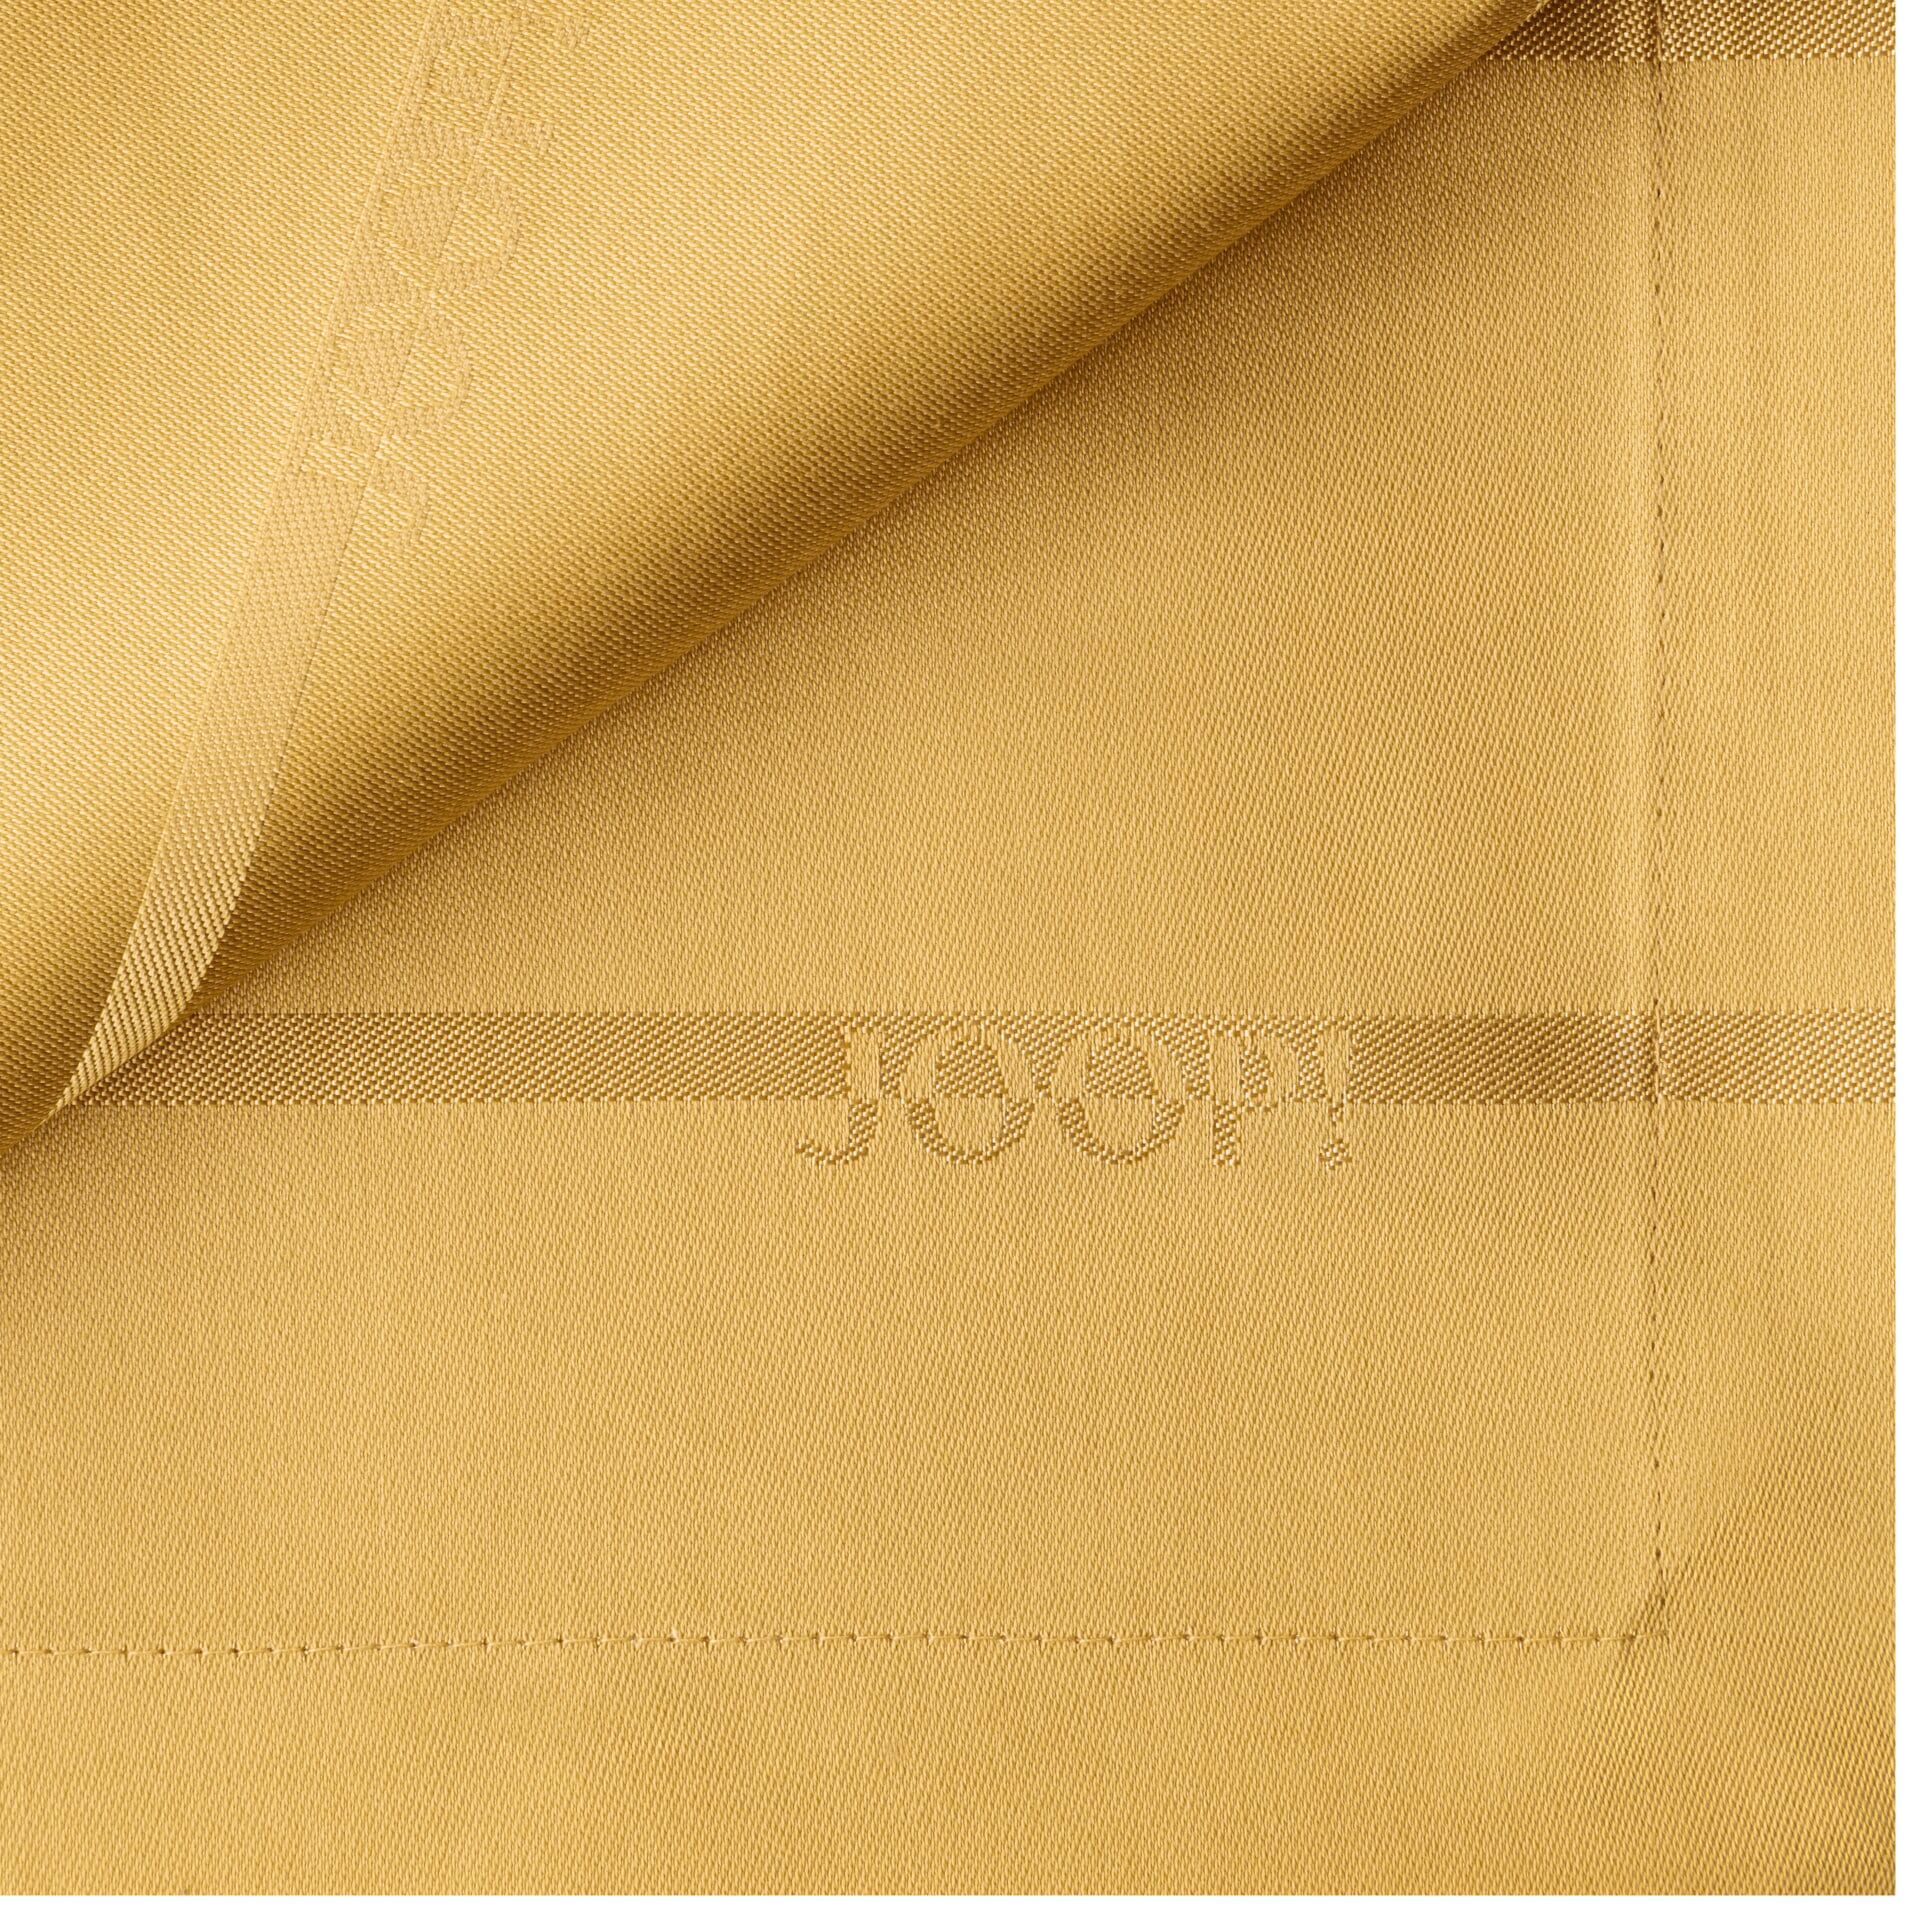 JOOP! Stoffserviette »LOGO STRIPES«, (Set, 2 St.), mit elegantem JOOP! Logo-Muster im Streifen-Design, 50x50 cm